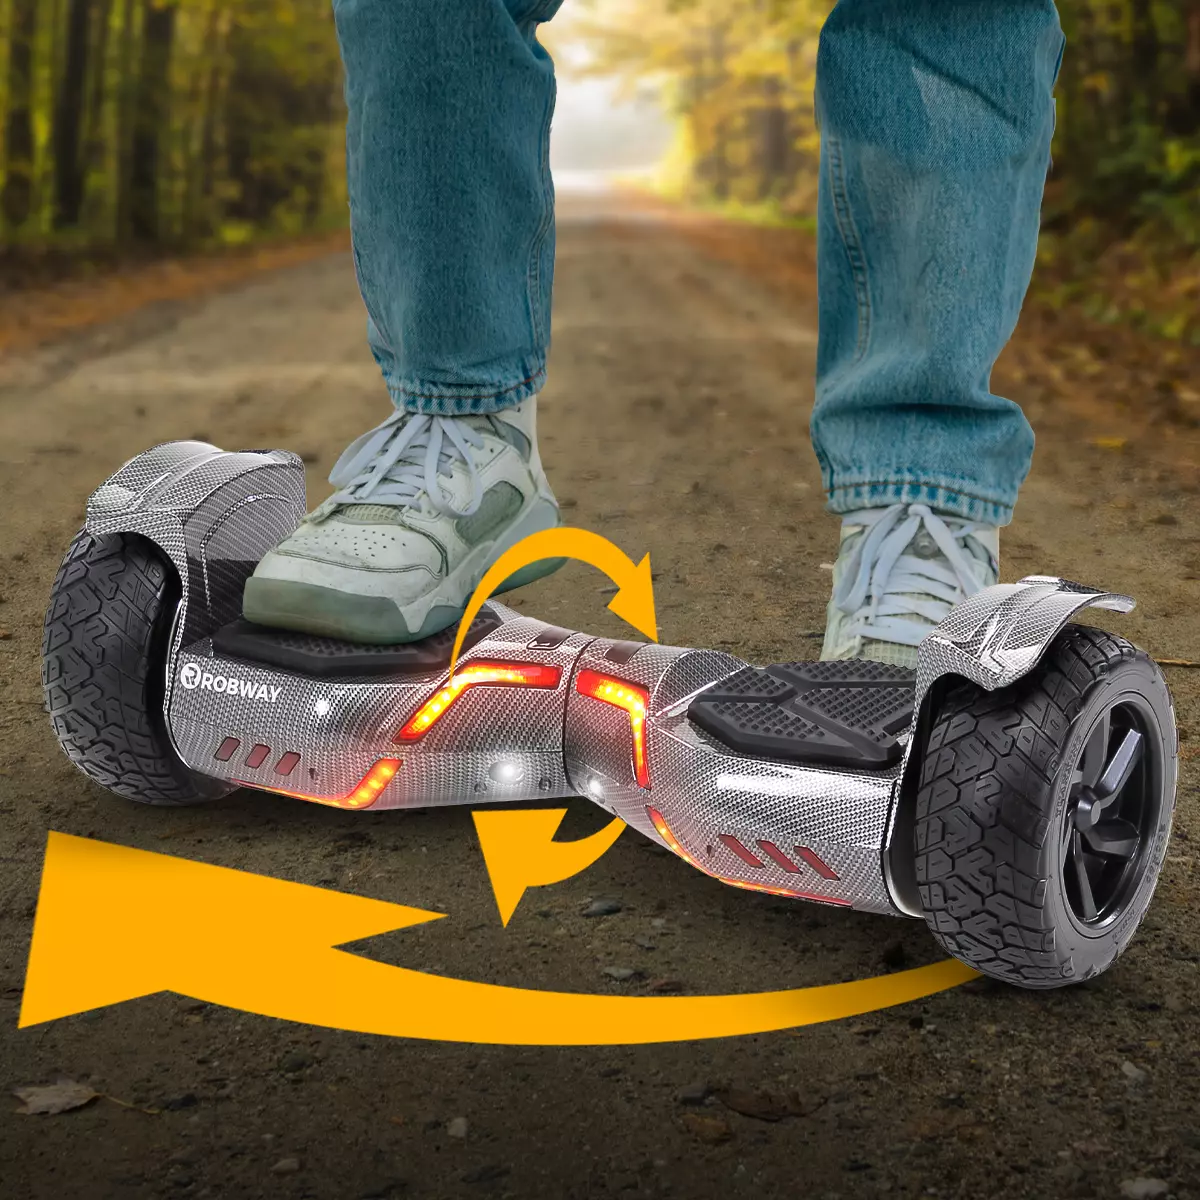 Füße in Sneakern steigen auf leuchtendes Robway X2 Offroad-Hoverboard auf